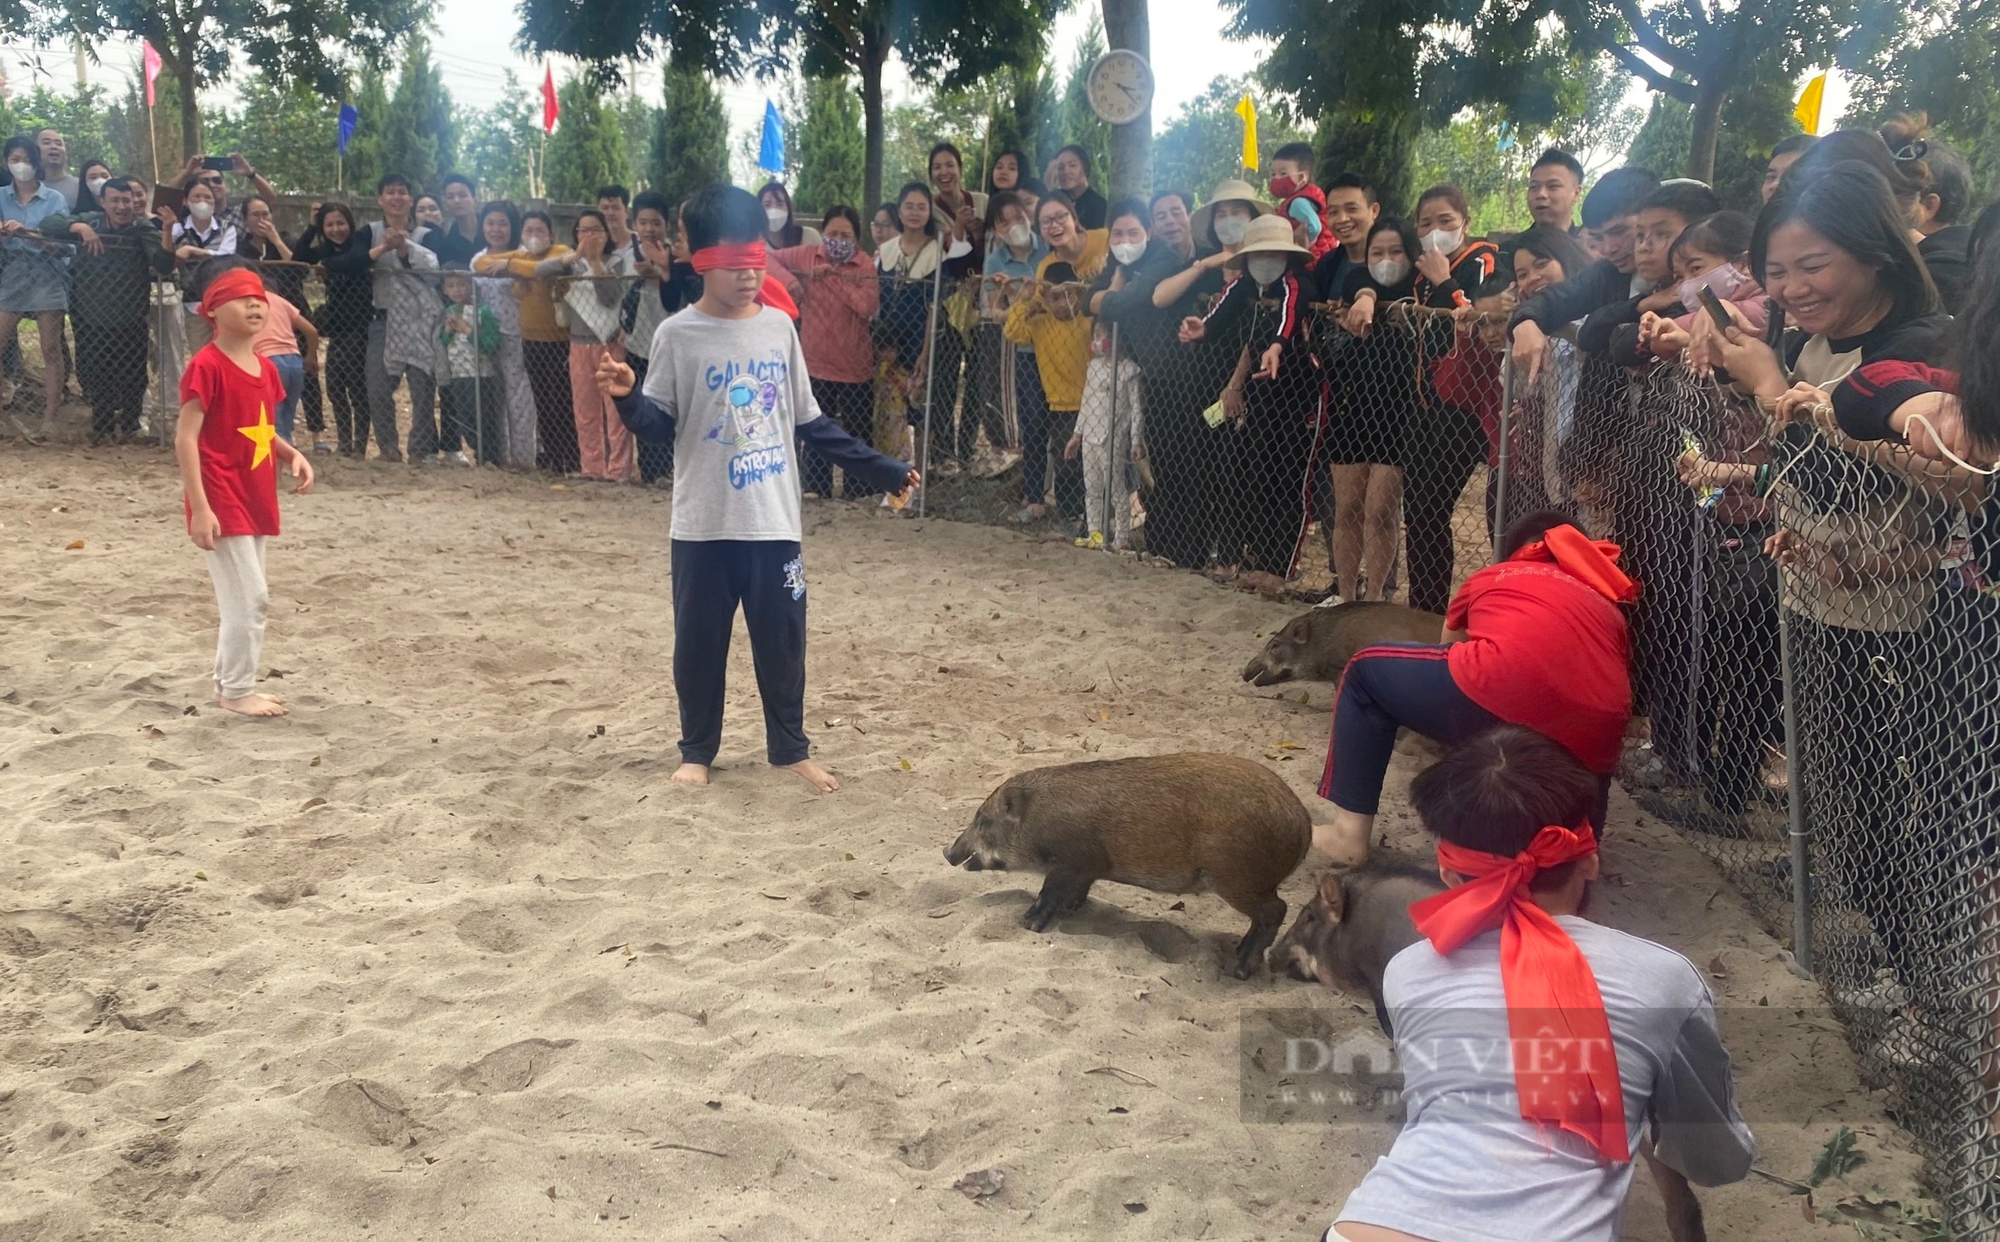 Trẻ em thích thú với trò chơi bịt mắt bắt lợn tại lễ hội ở quận Hà Đông- Ảnh 2.